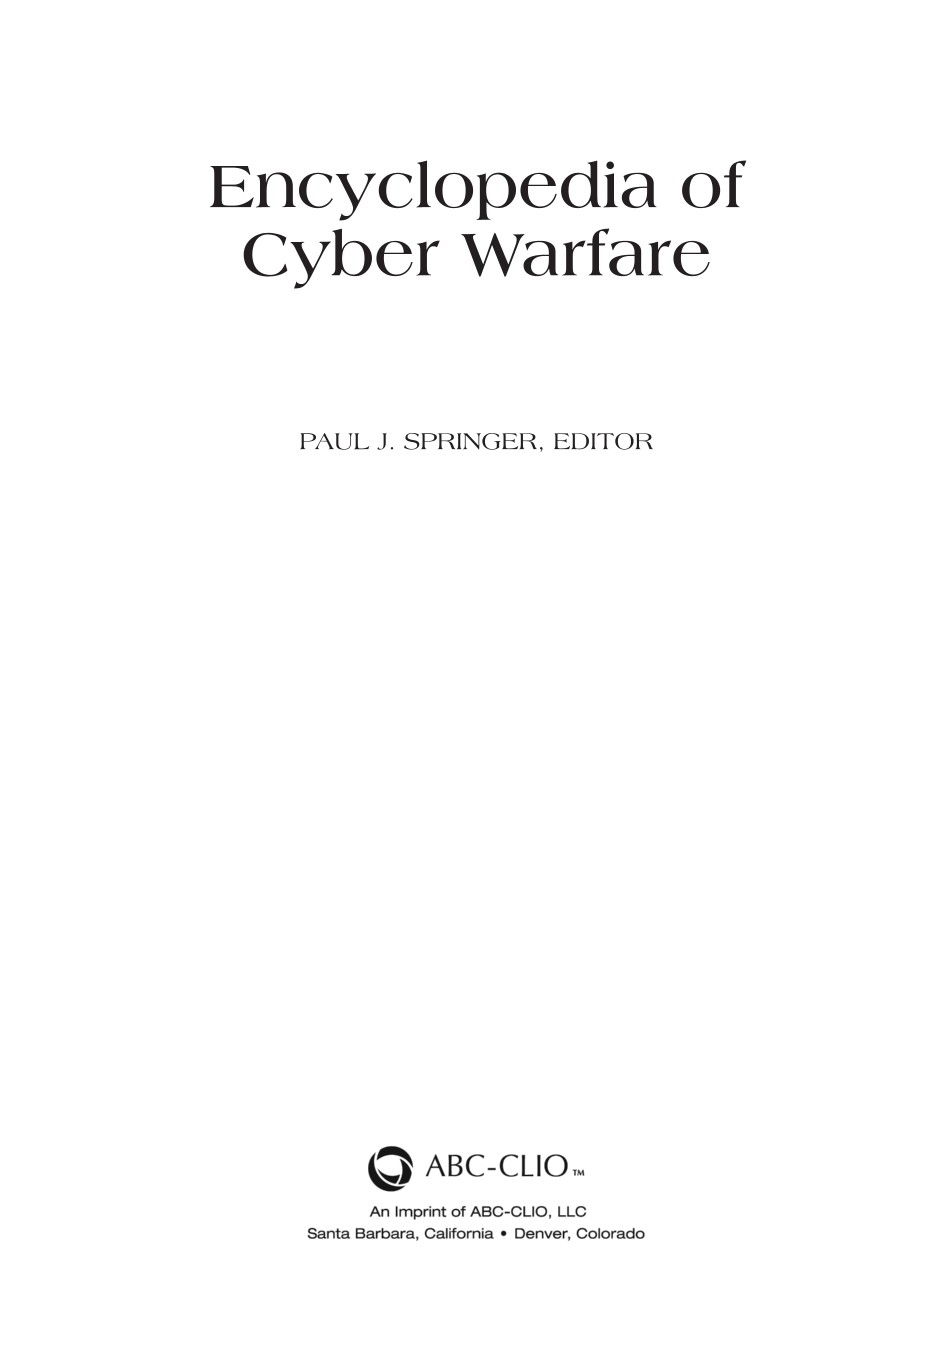 Encyclopedia of Cyber Warfare page iii